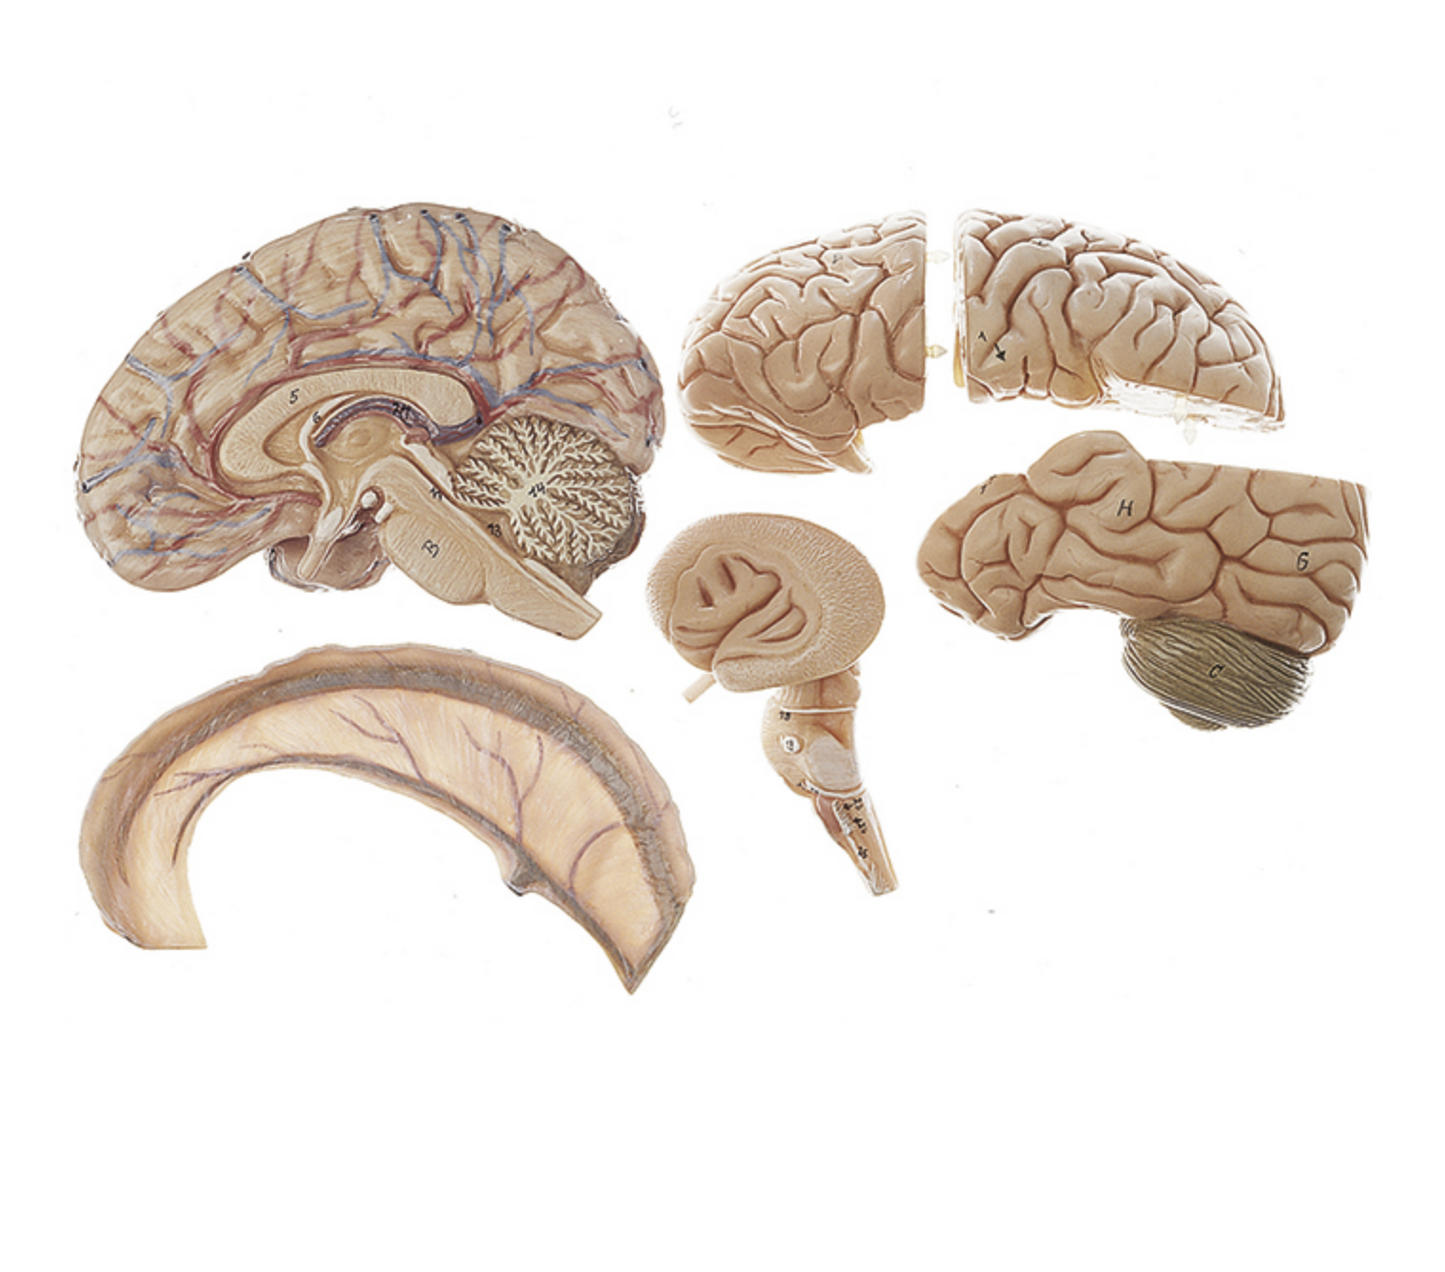 Hjernemodel fra SOMSO Modelle som kan adskilles i 6 dele